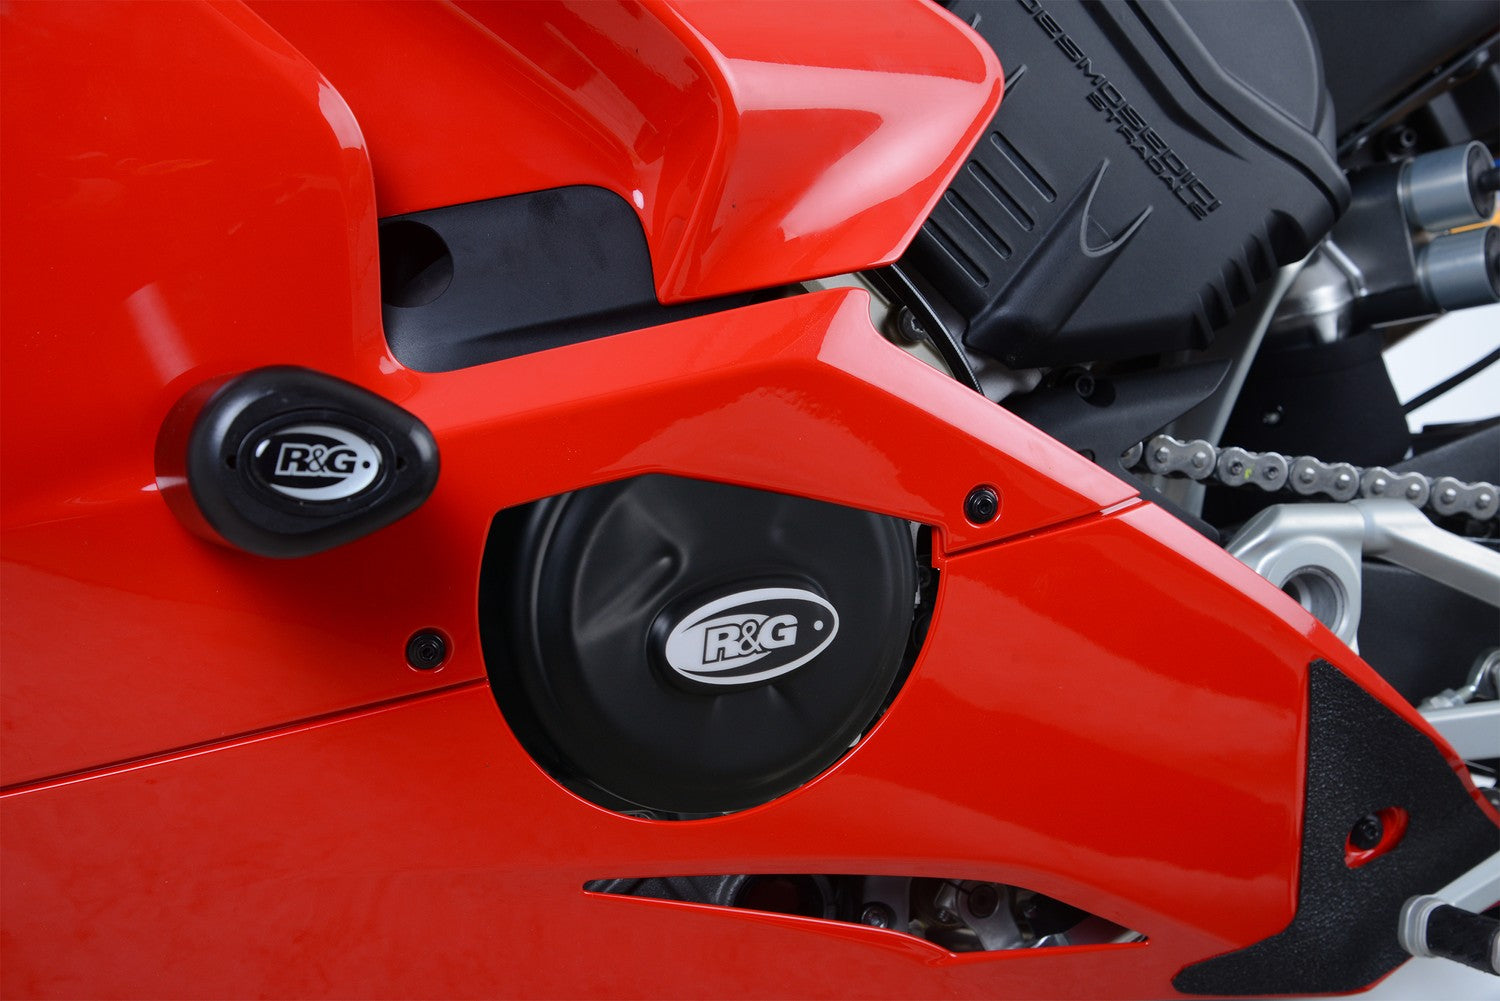 R&G Left Engine Case Cover for Ducati Streetfighter V4